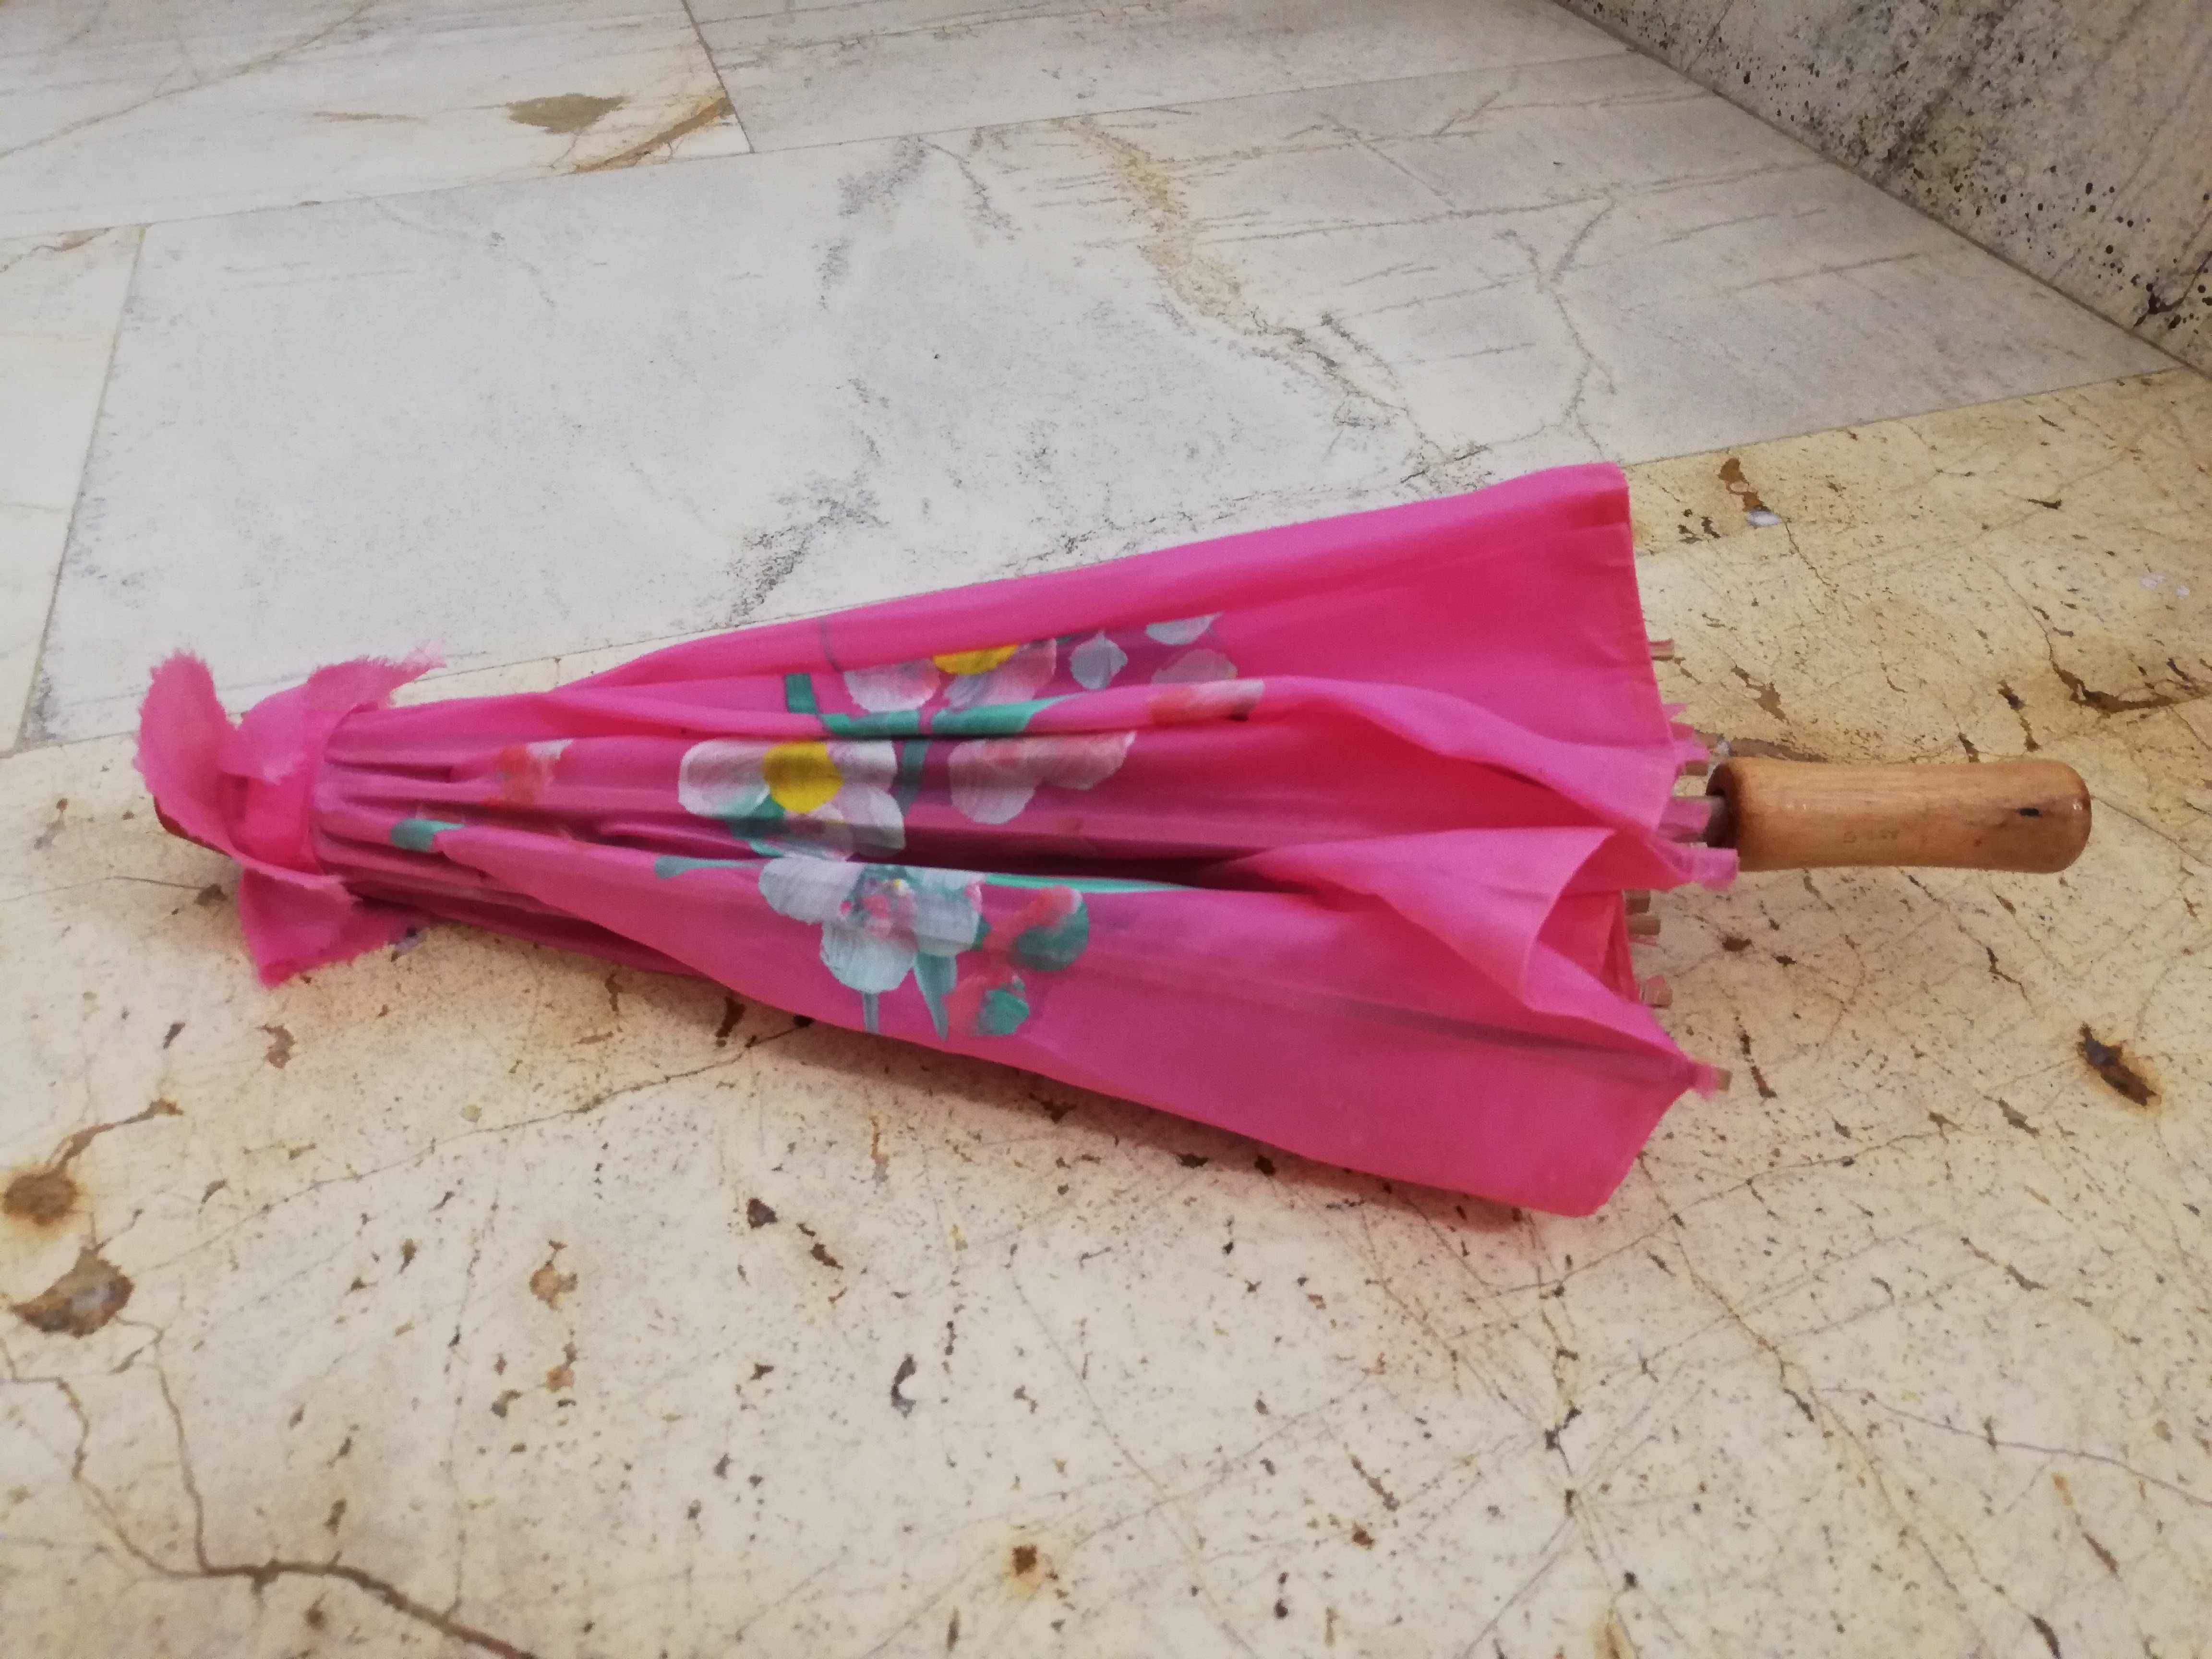 Chińska parasolka , mała,  dekoracja, zabawka dla dziecka.